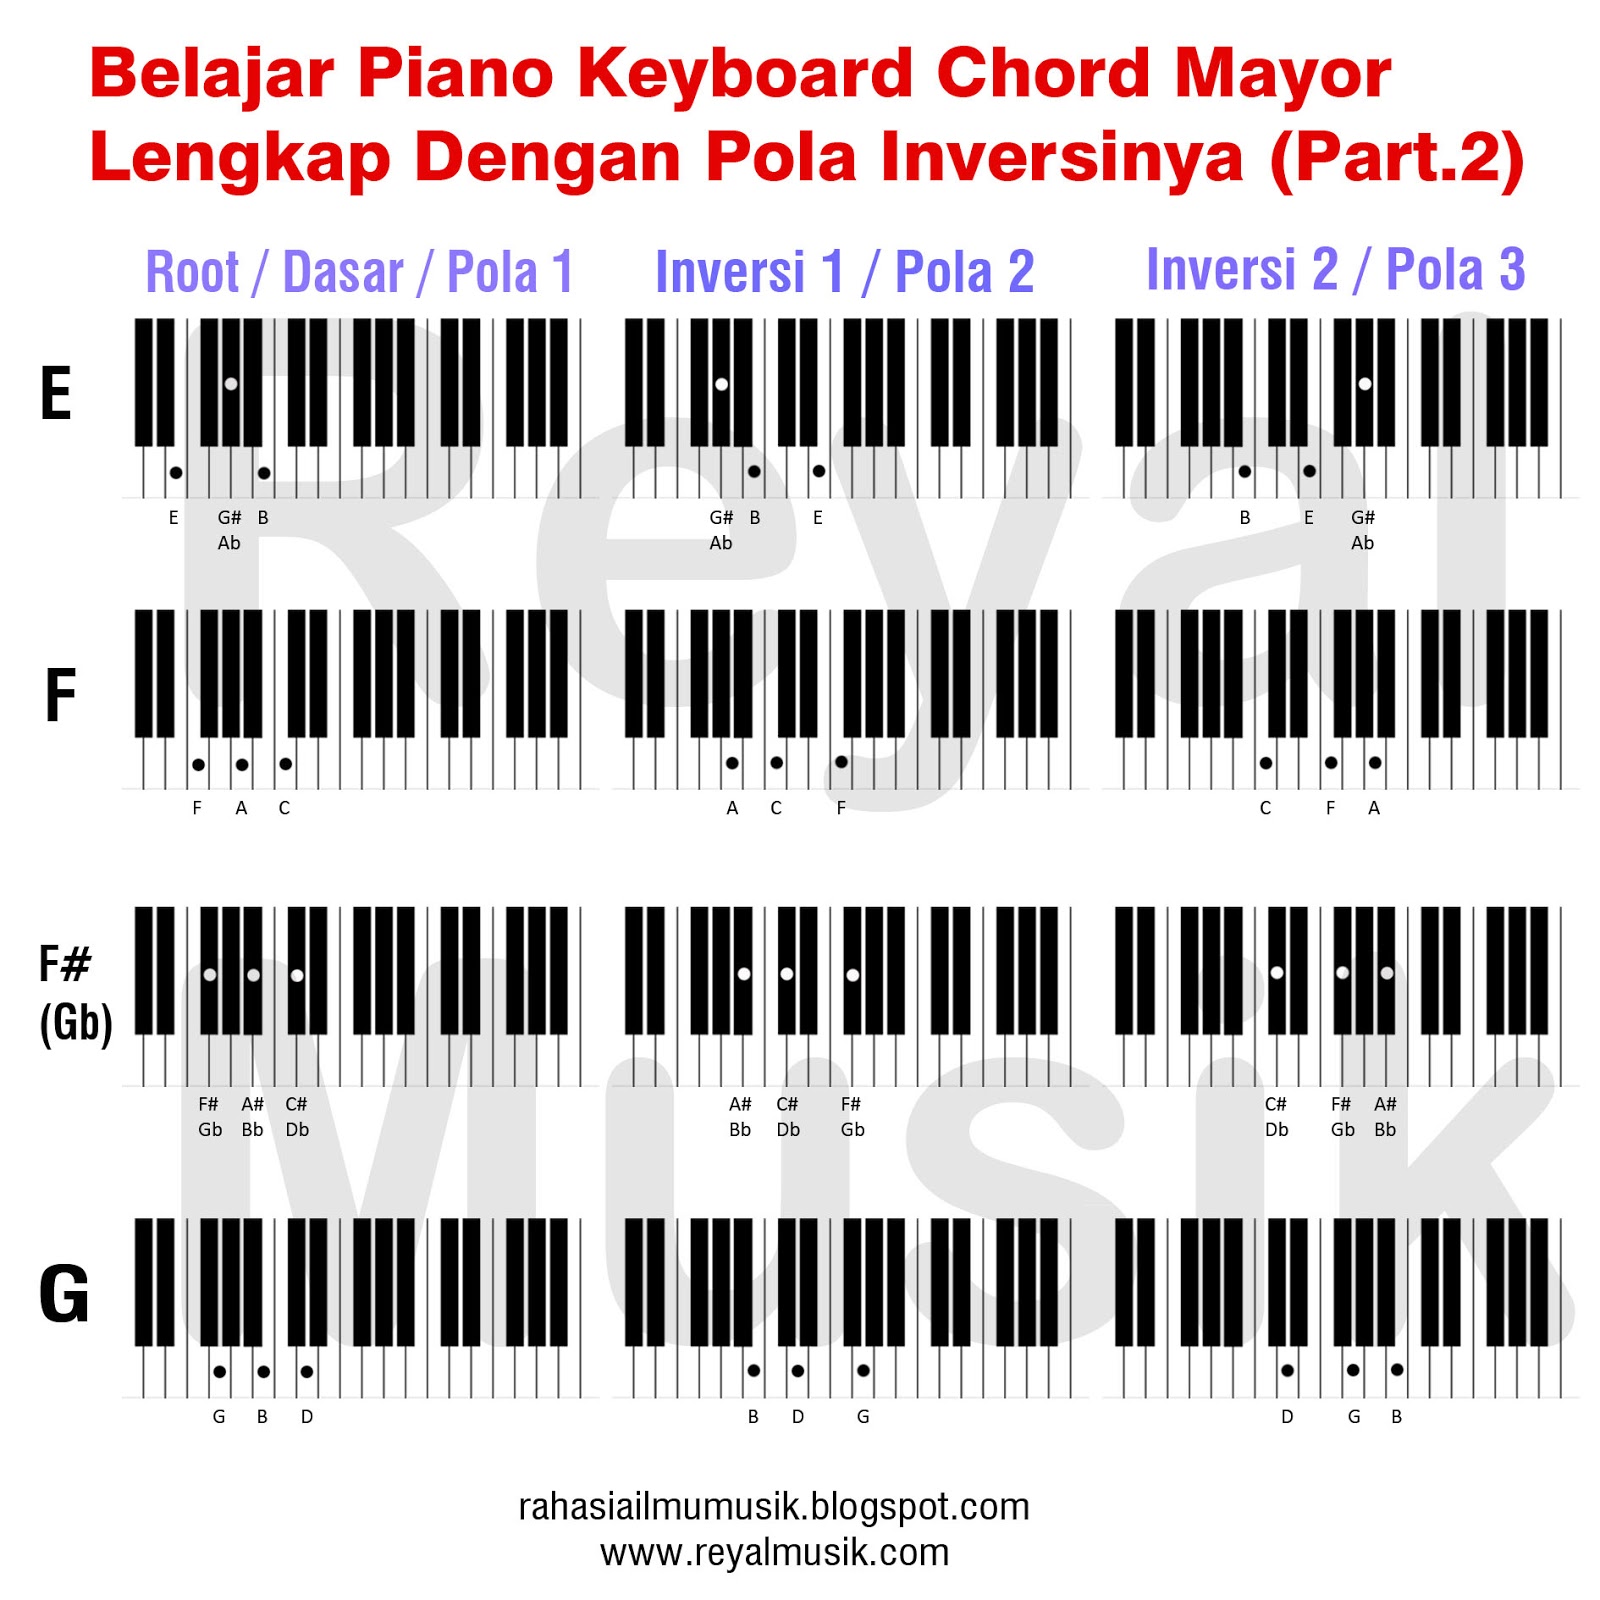 Belajar Kunci Piano Keyboard 12 Chord Mayor C C D D E F 